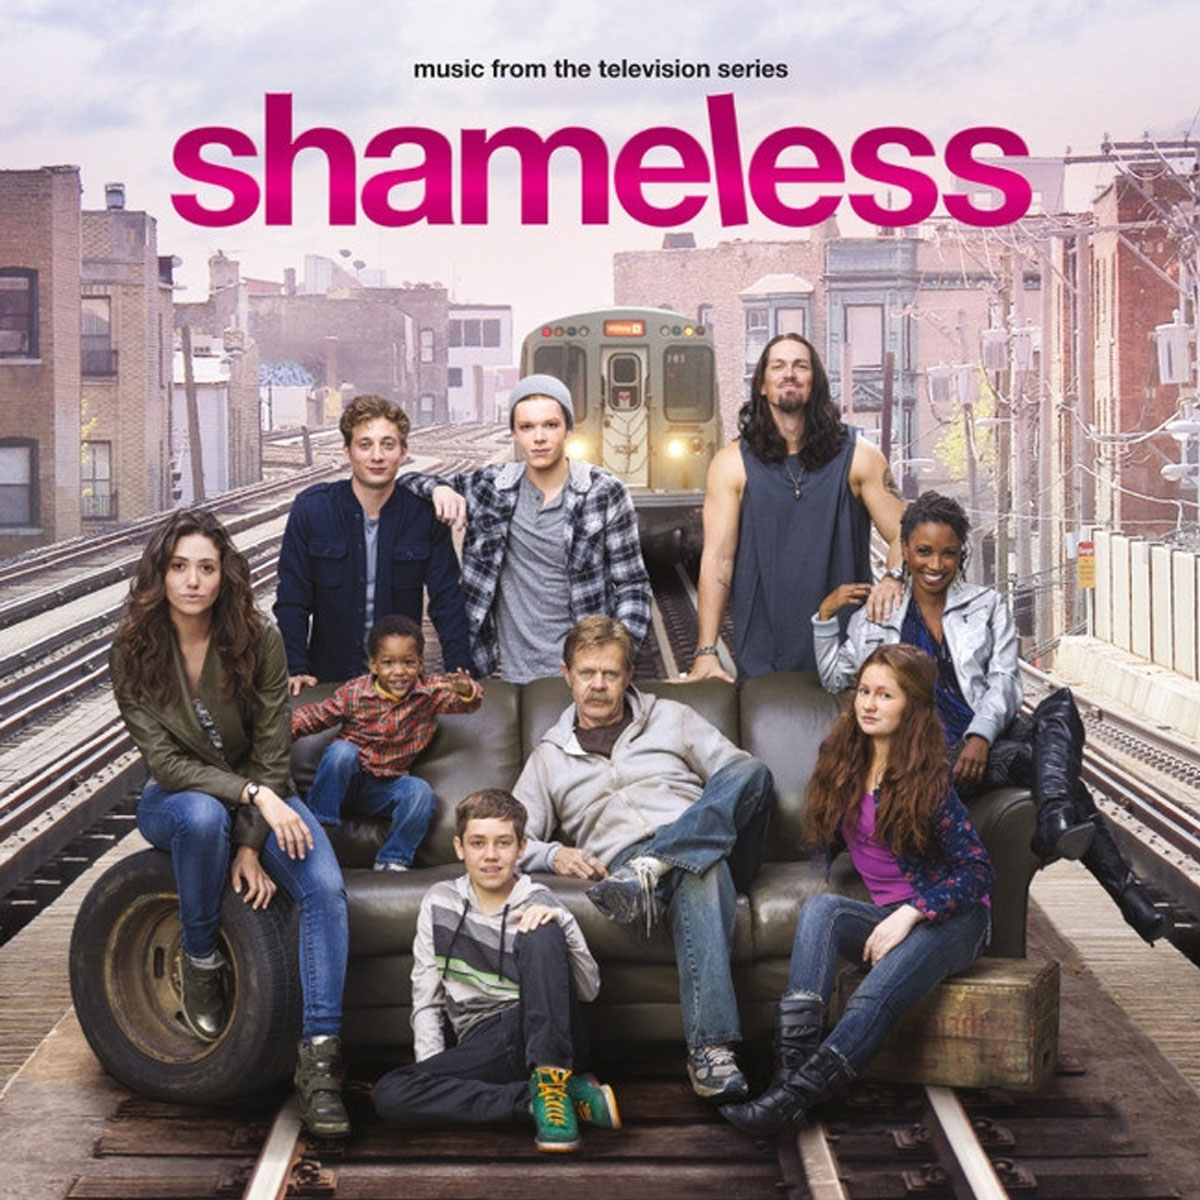 Shameless - Music from the TV series